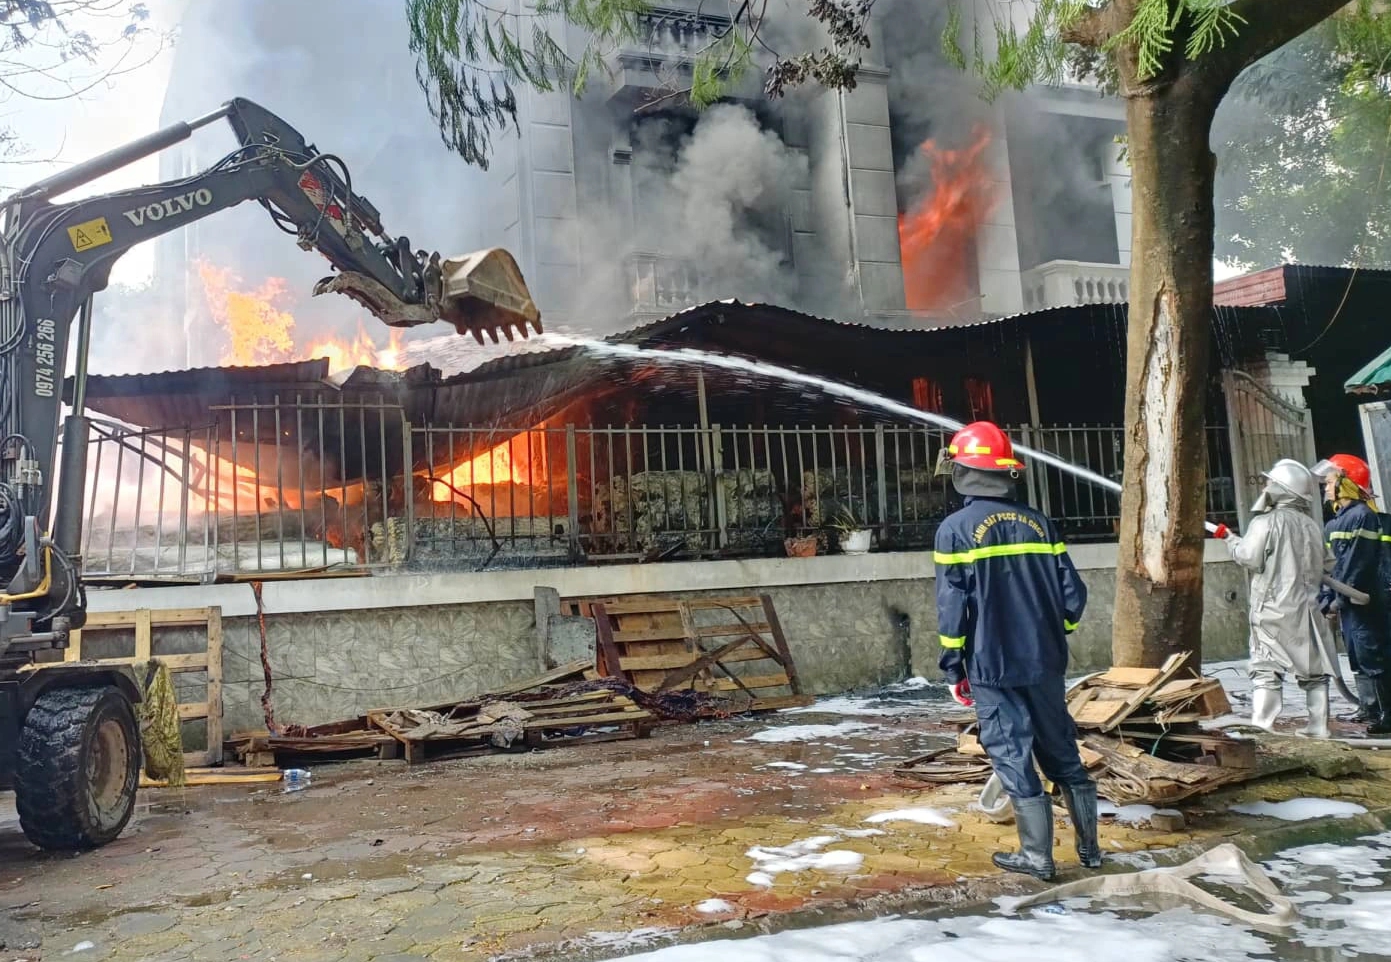 Ngôi nhà 3 tầng cháy dữ dội, một chiến sĩ cứu hỏa bị thương - Ảnh 3.